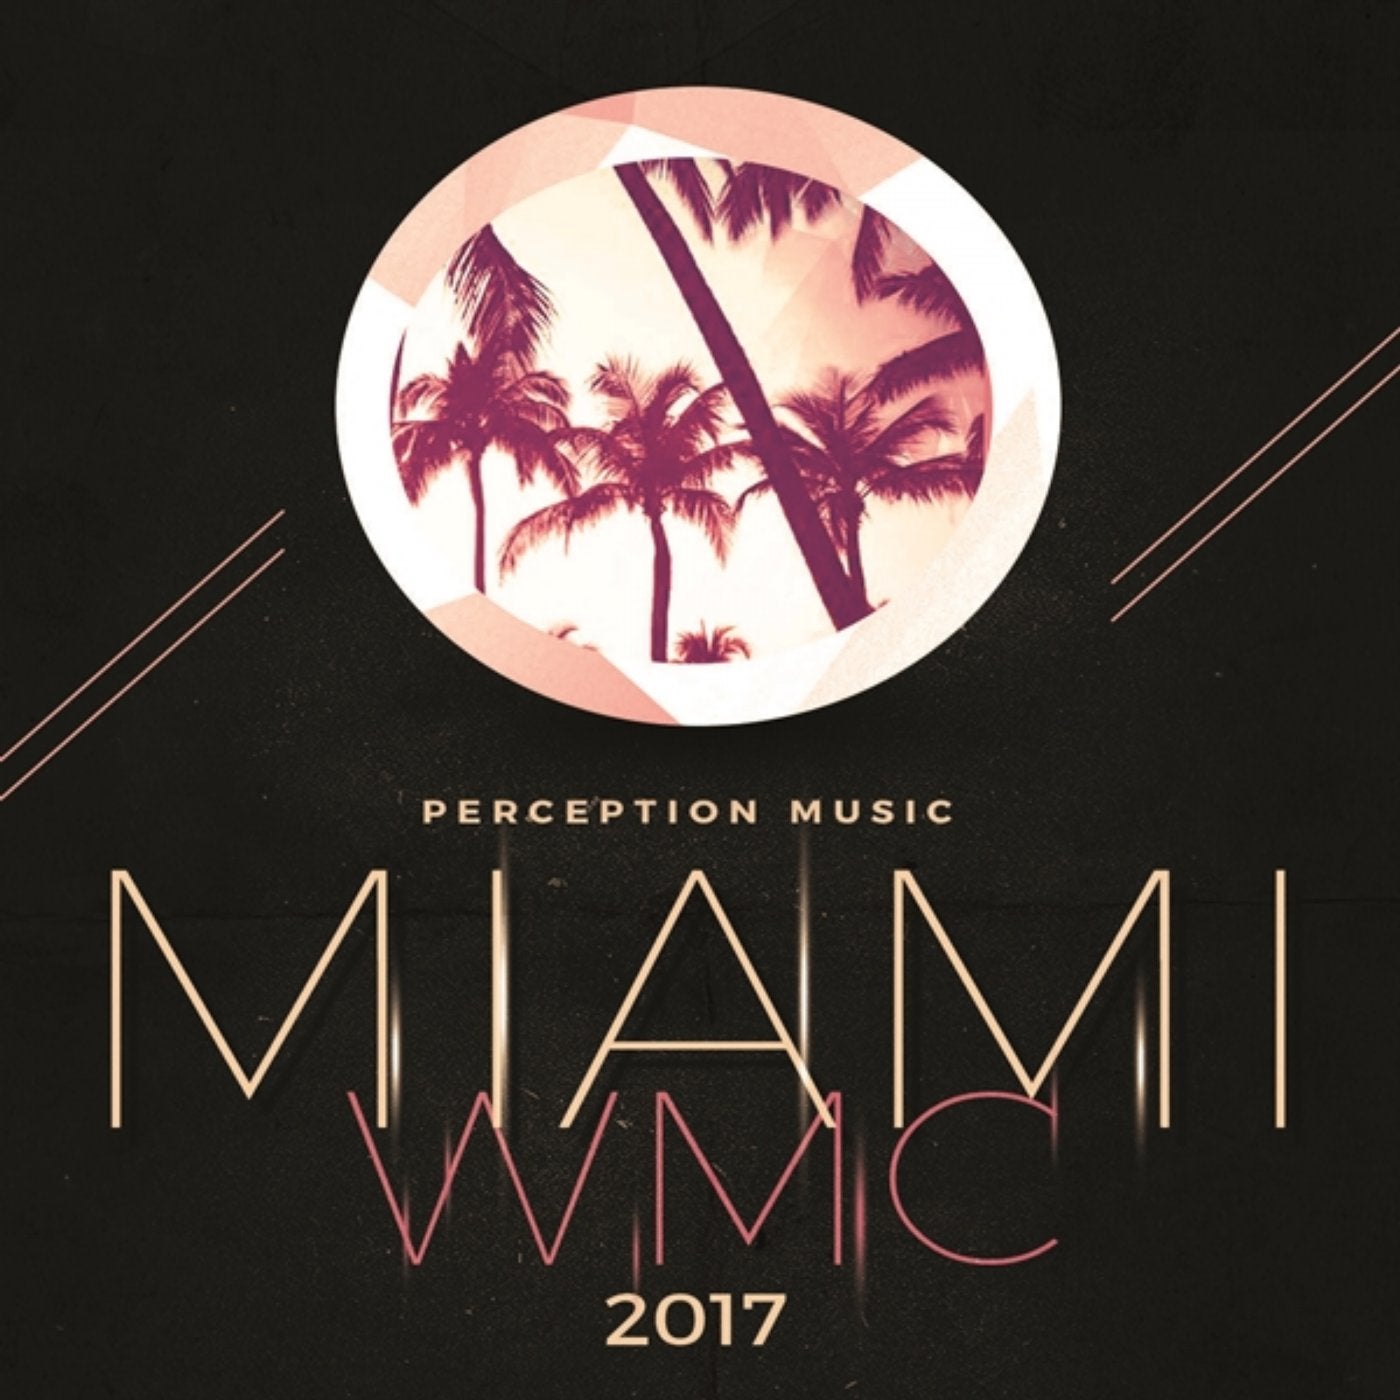 Miami WMC 2017